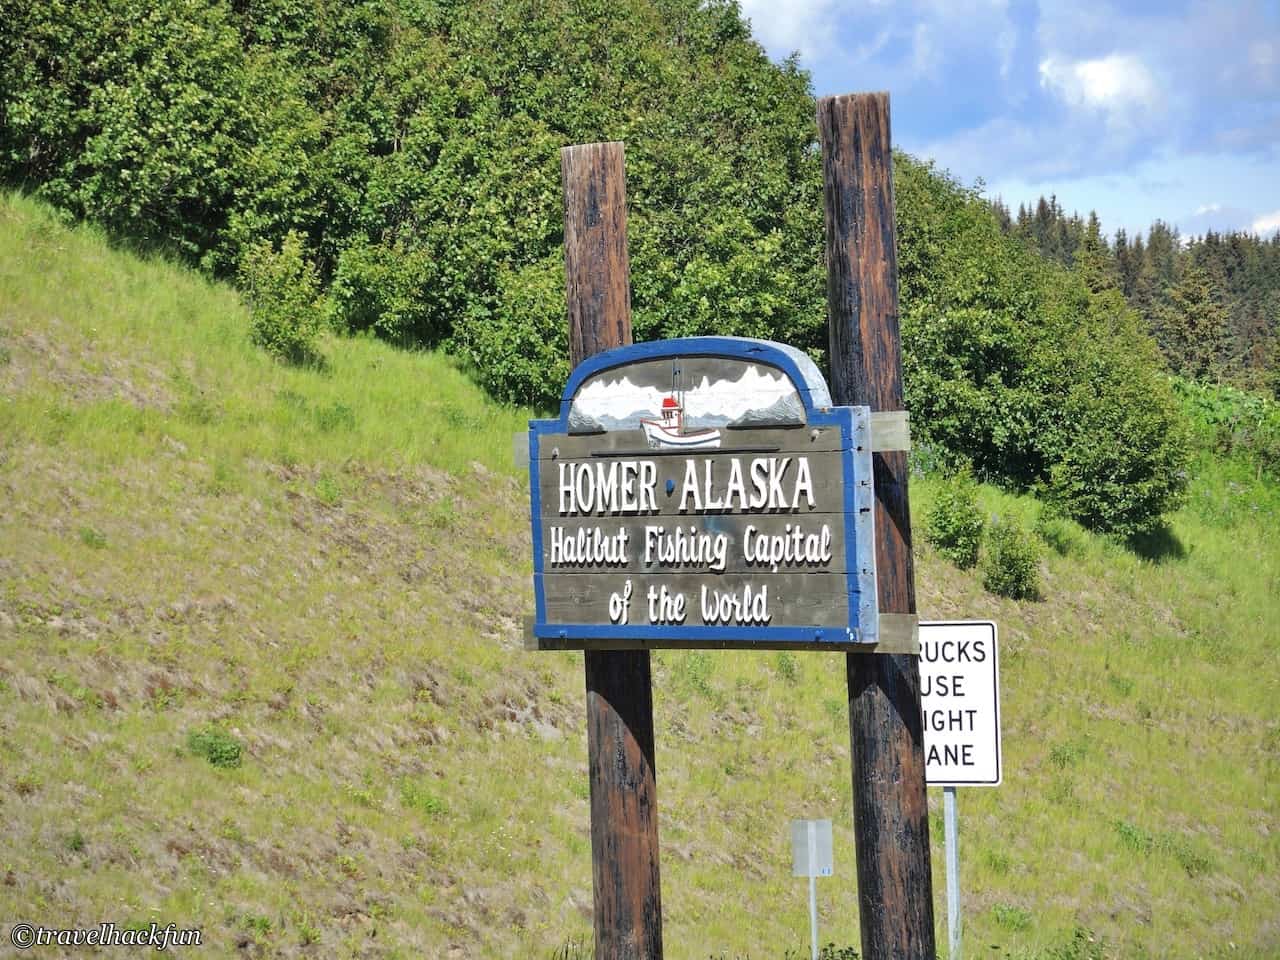 Alaska,alaska itinerary,阿拉斯加,阿拉斯加自駕 27